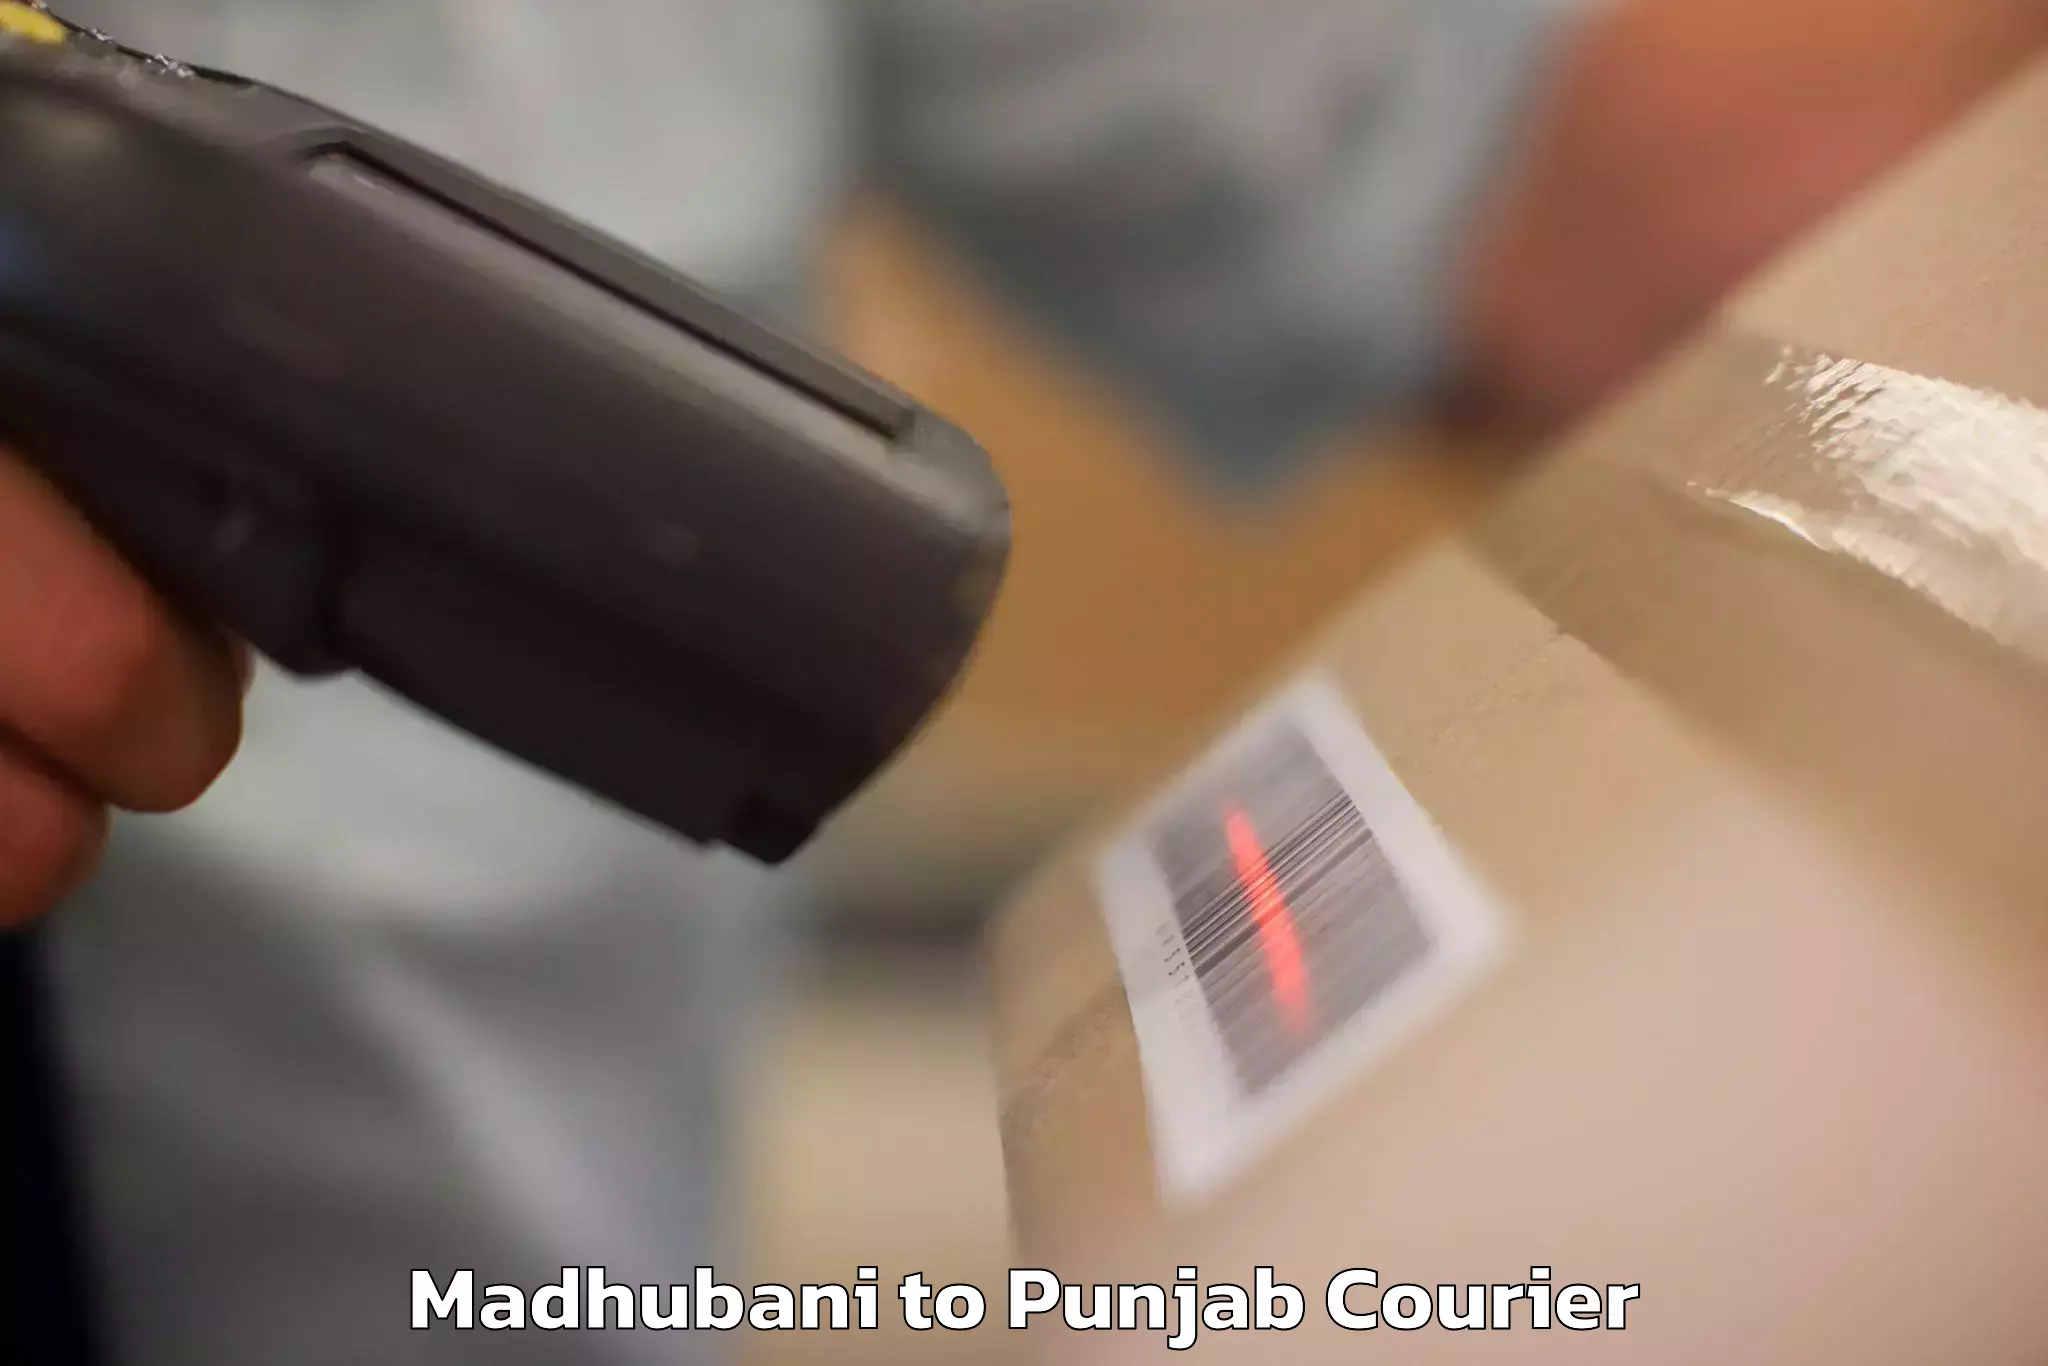 Luggage delivery app Madhubani to Jalandhar